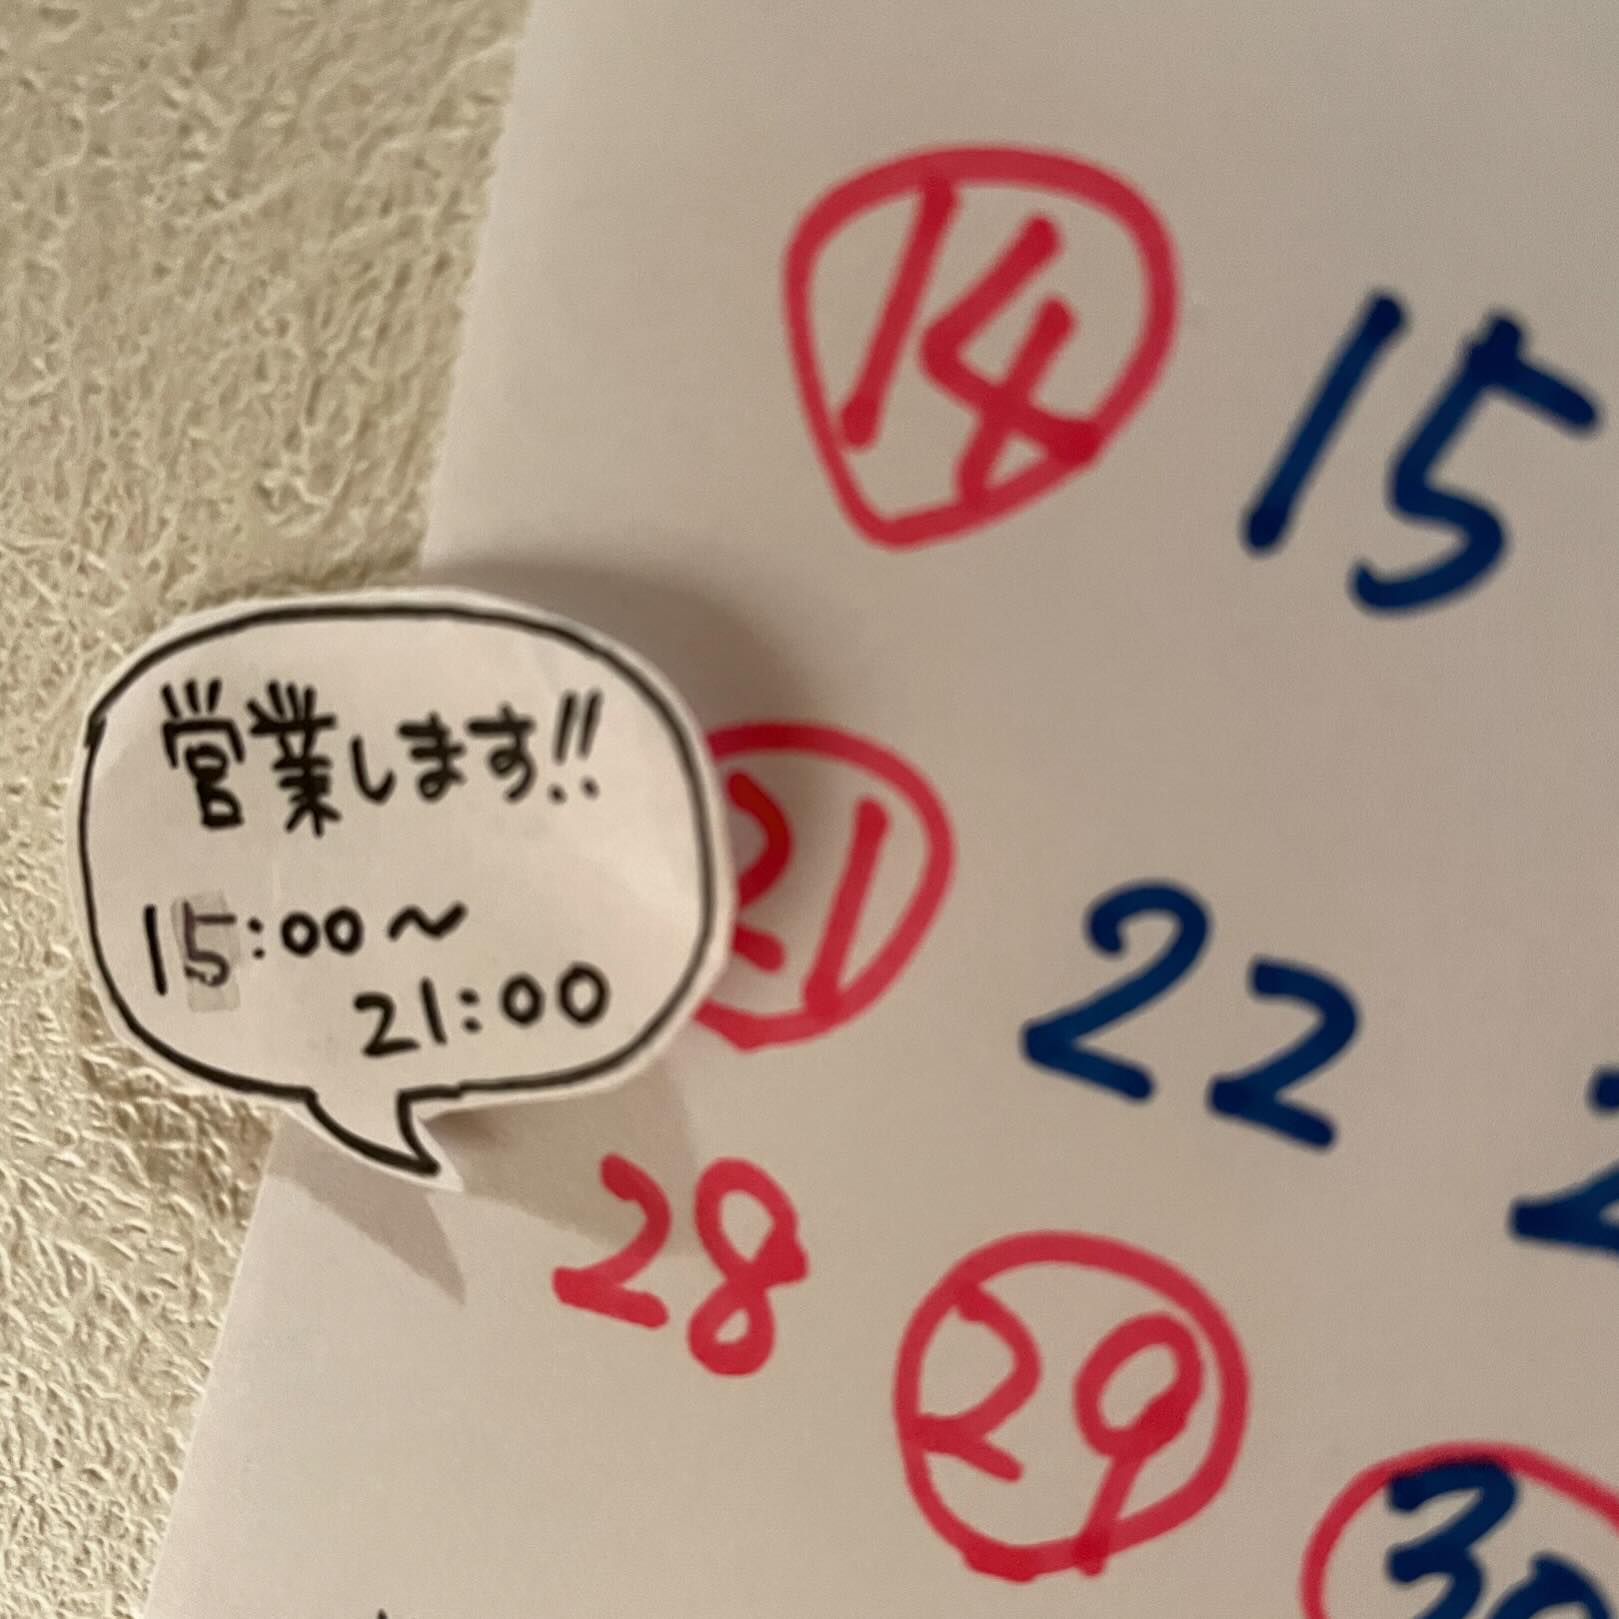 明日4/28は、日曜イルフェです♪15:00〜21:00で昼飲み営業しています。GWは、4/29、30  休み5/1、2、3  営業5/4、5、6、7  休み5/8〜　　営業変則的ですがよろしくお願いします。#イルフェソワフ #ワイン#日本酒 #薬院#警固#焼き鳥#ナチュラルワイン#ヴァンナチュール#自然派ワイン